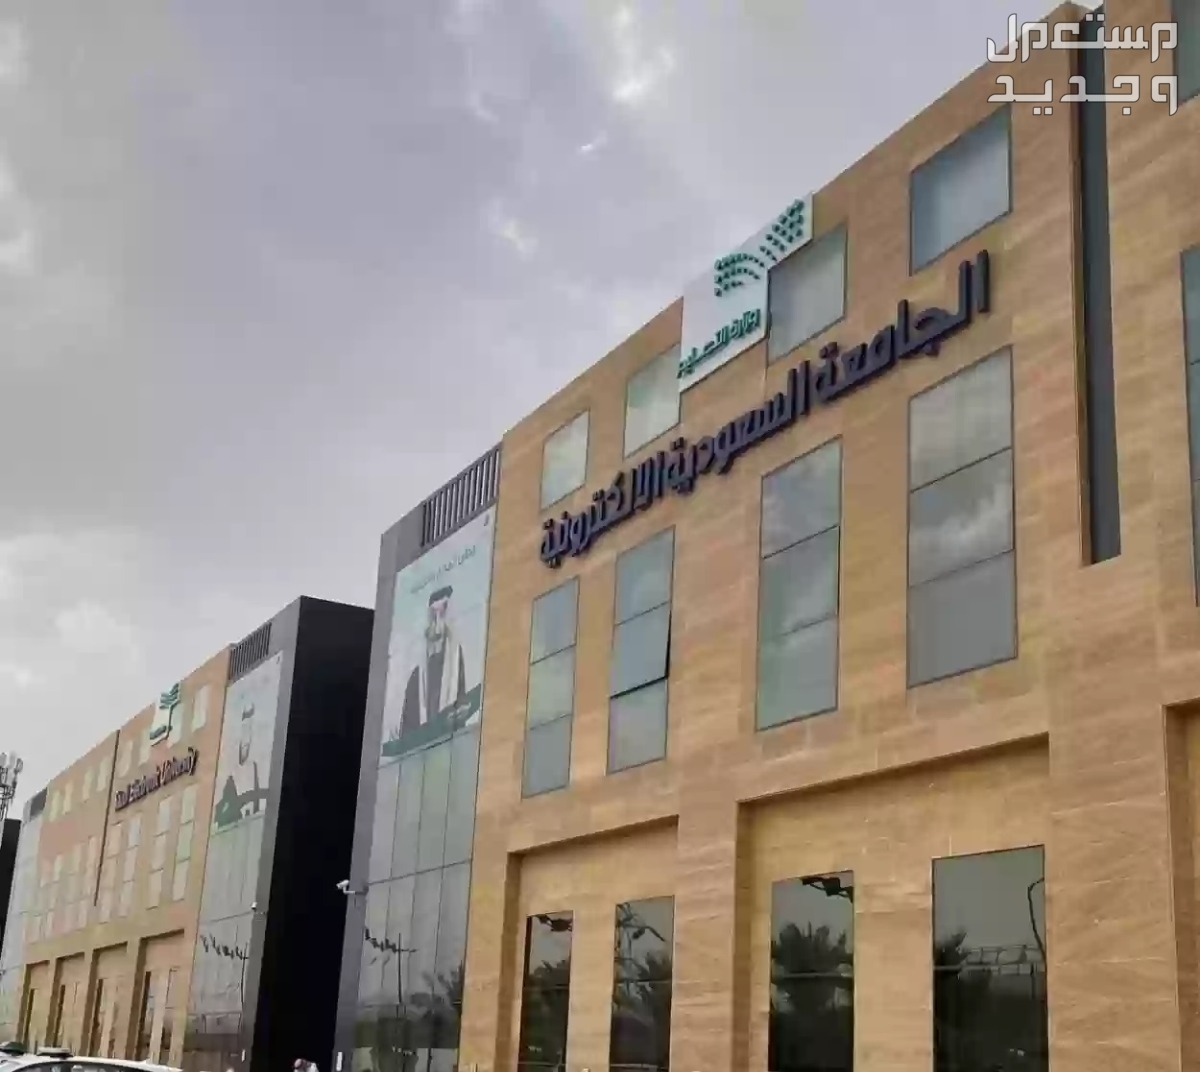 شروط القبول في الجامعة السعودية الالكترونية 1445 وكيفية التسجيل في الأردن